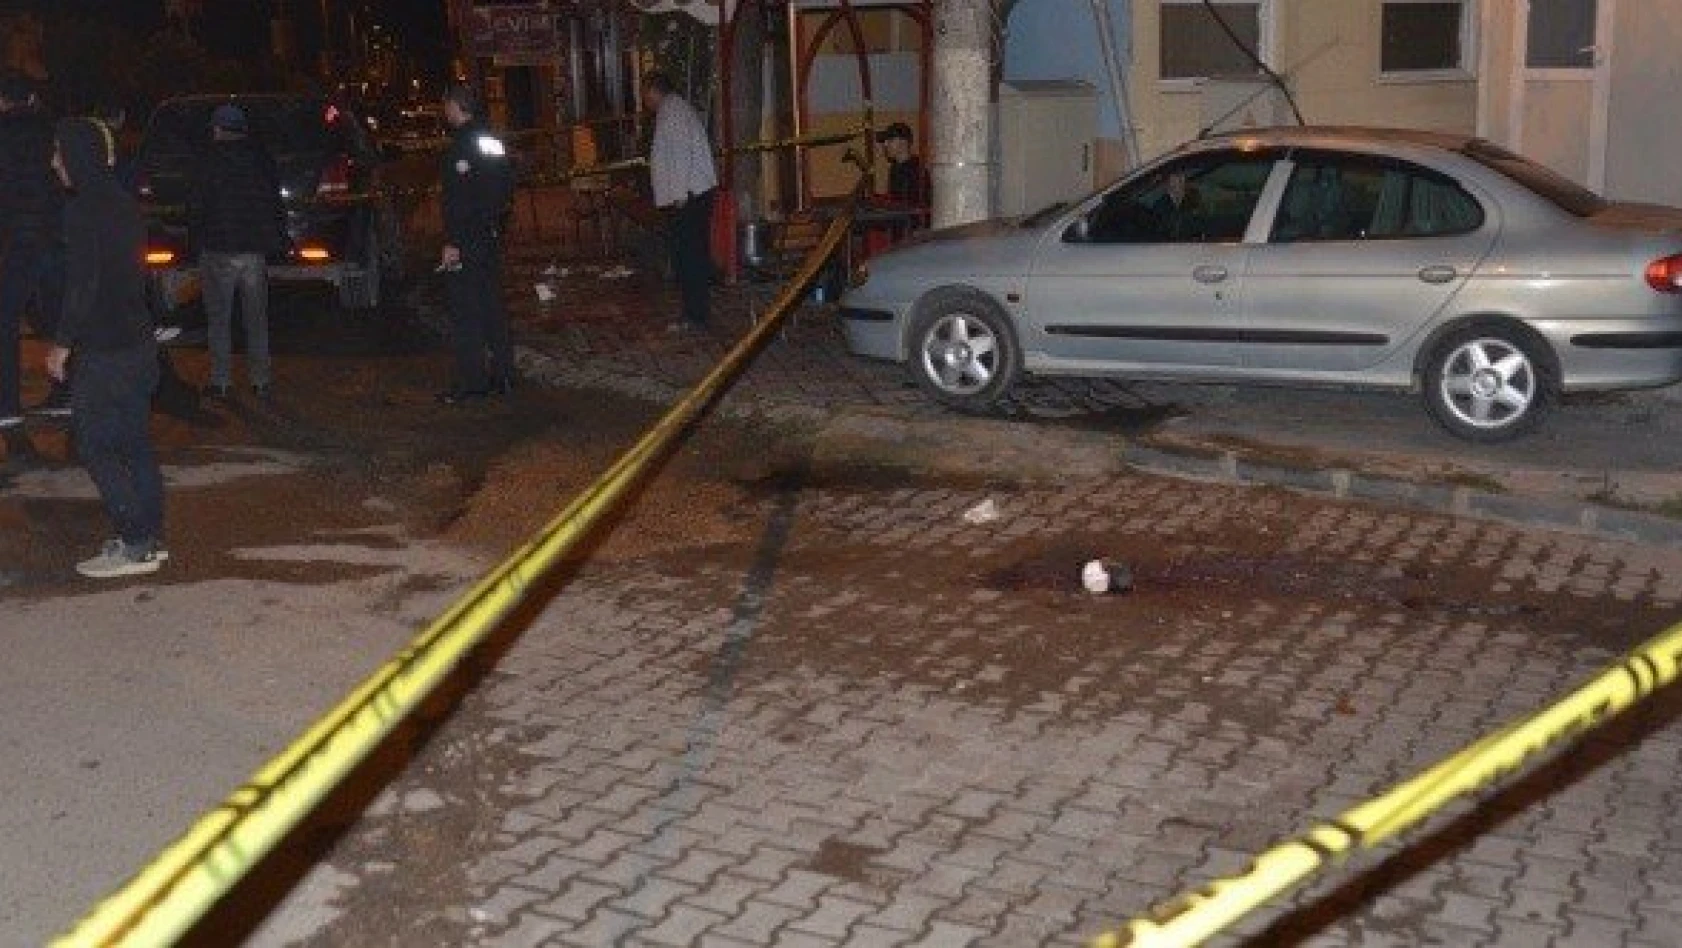 Kastamonu'da cinayet: 2 kişi pompalı tüfekle öldürüldü